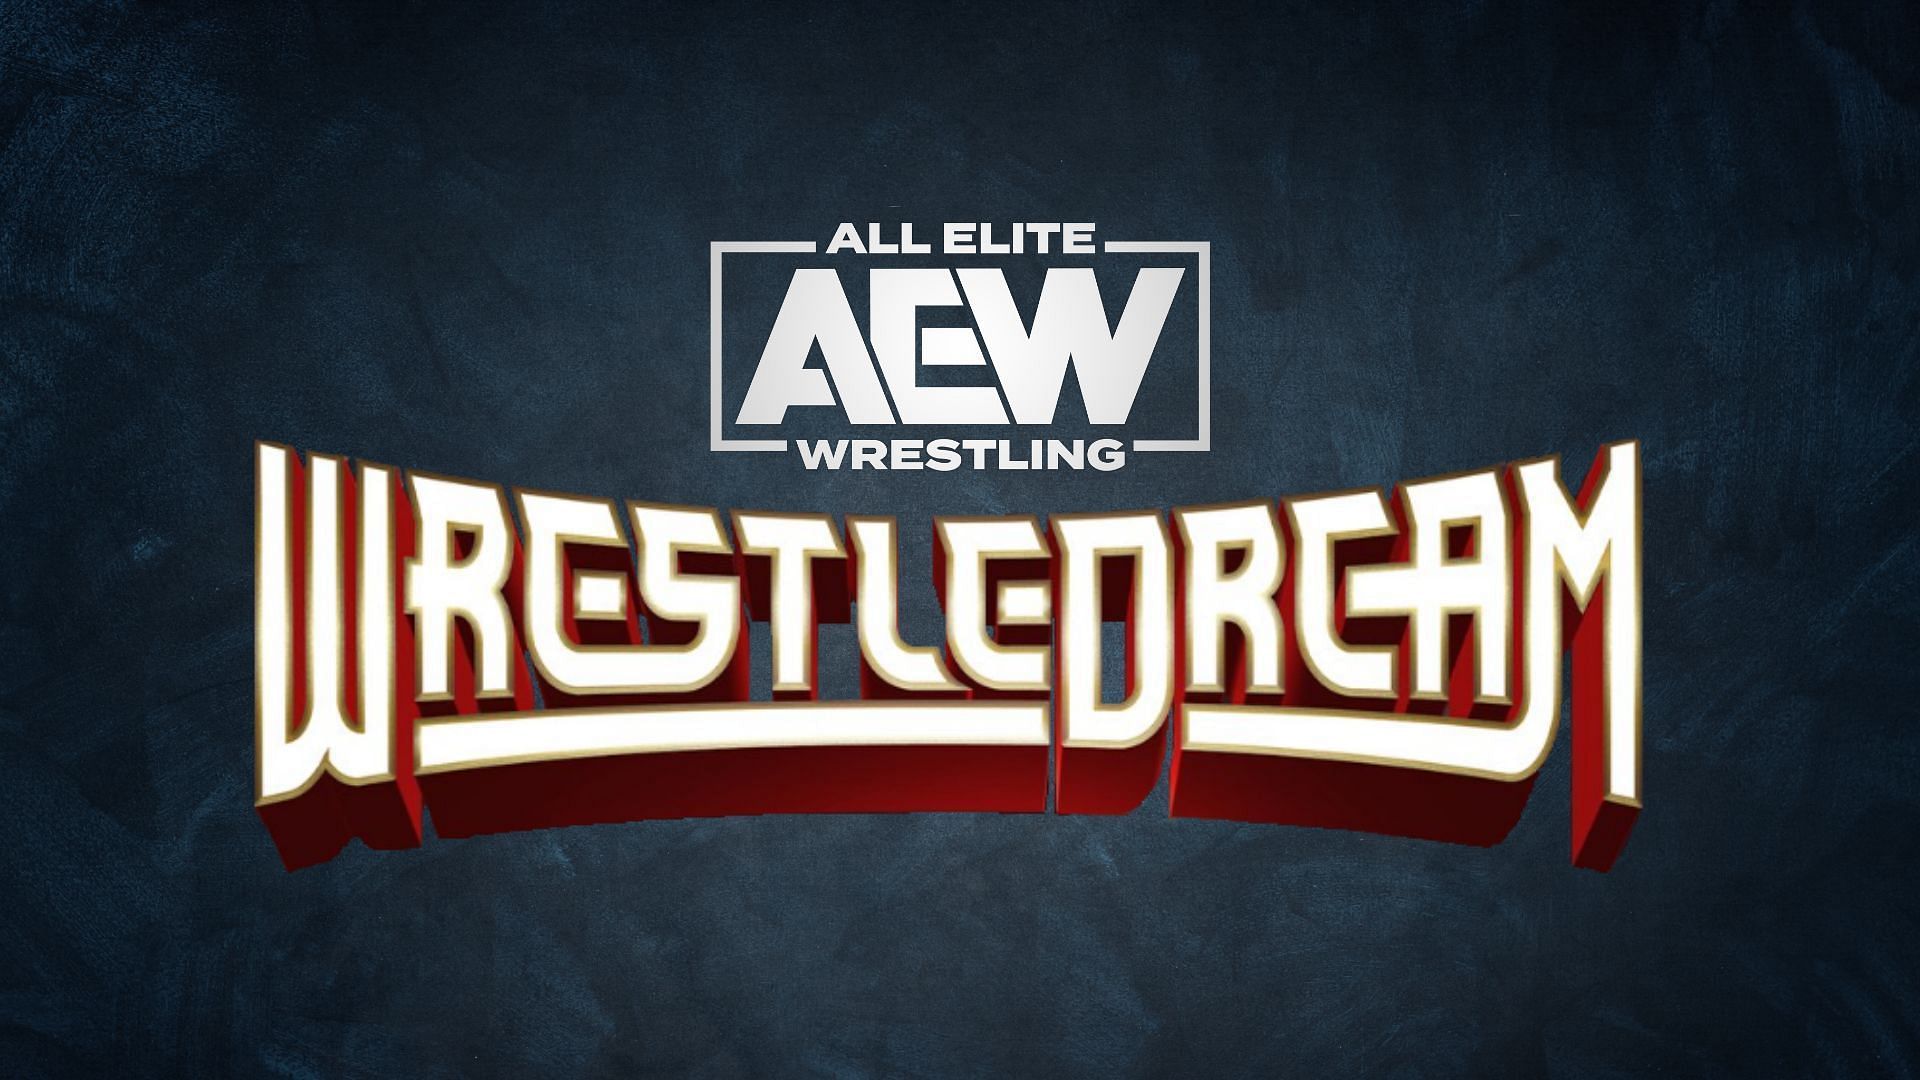 WrestleDream is All Elite Wrestling